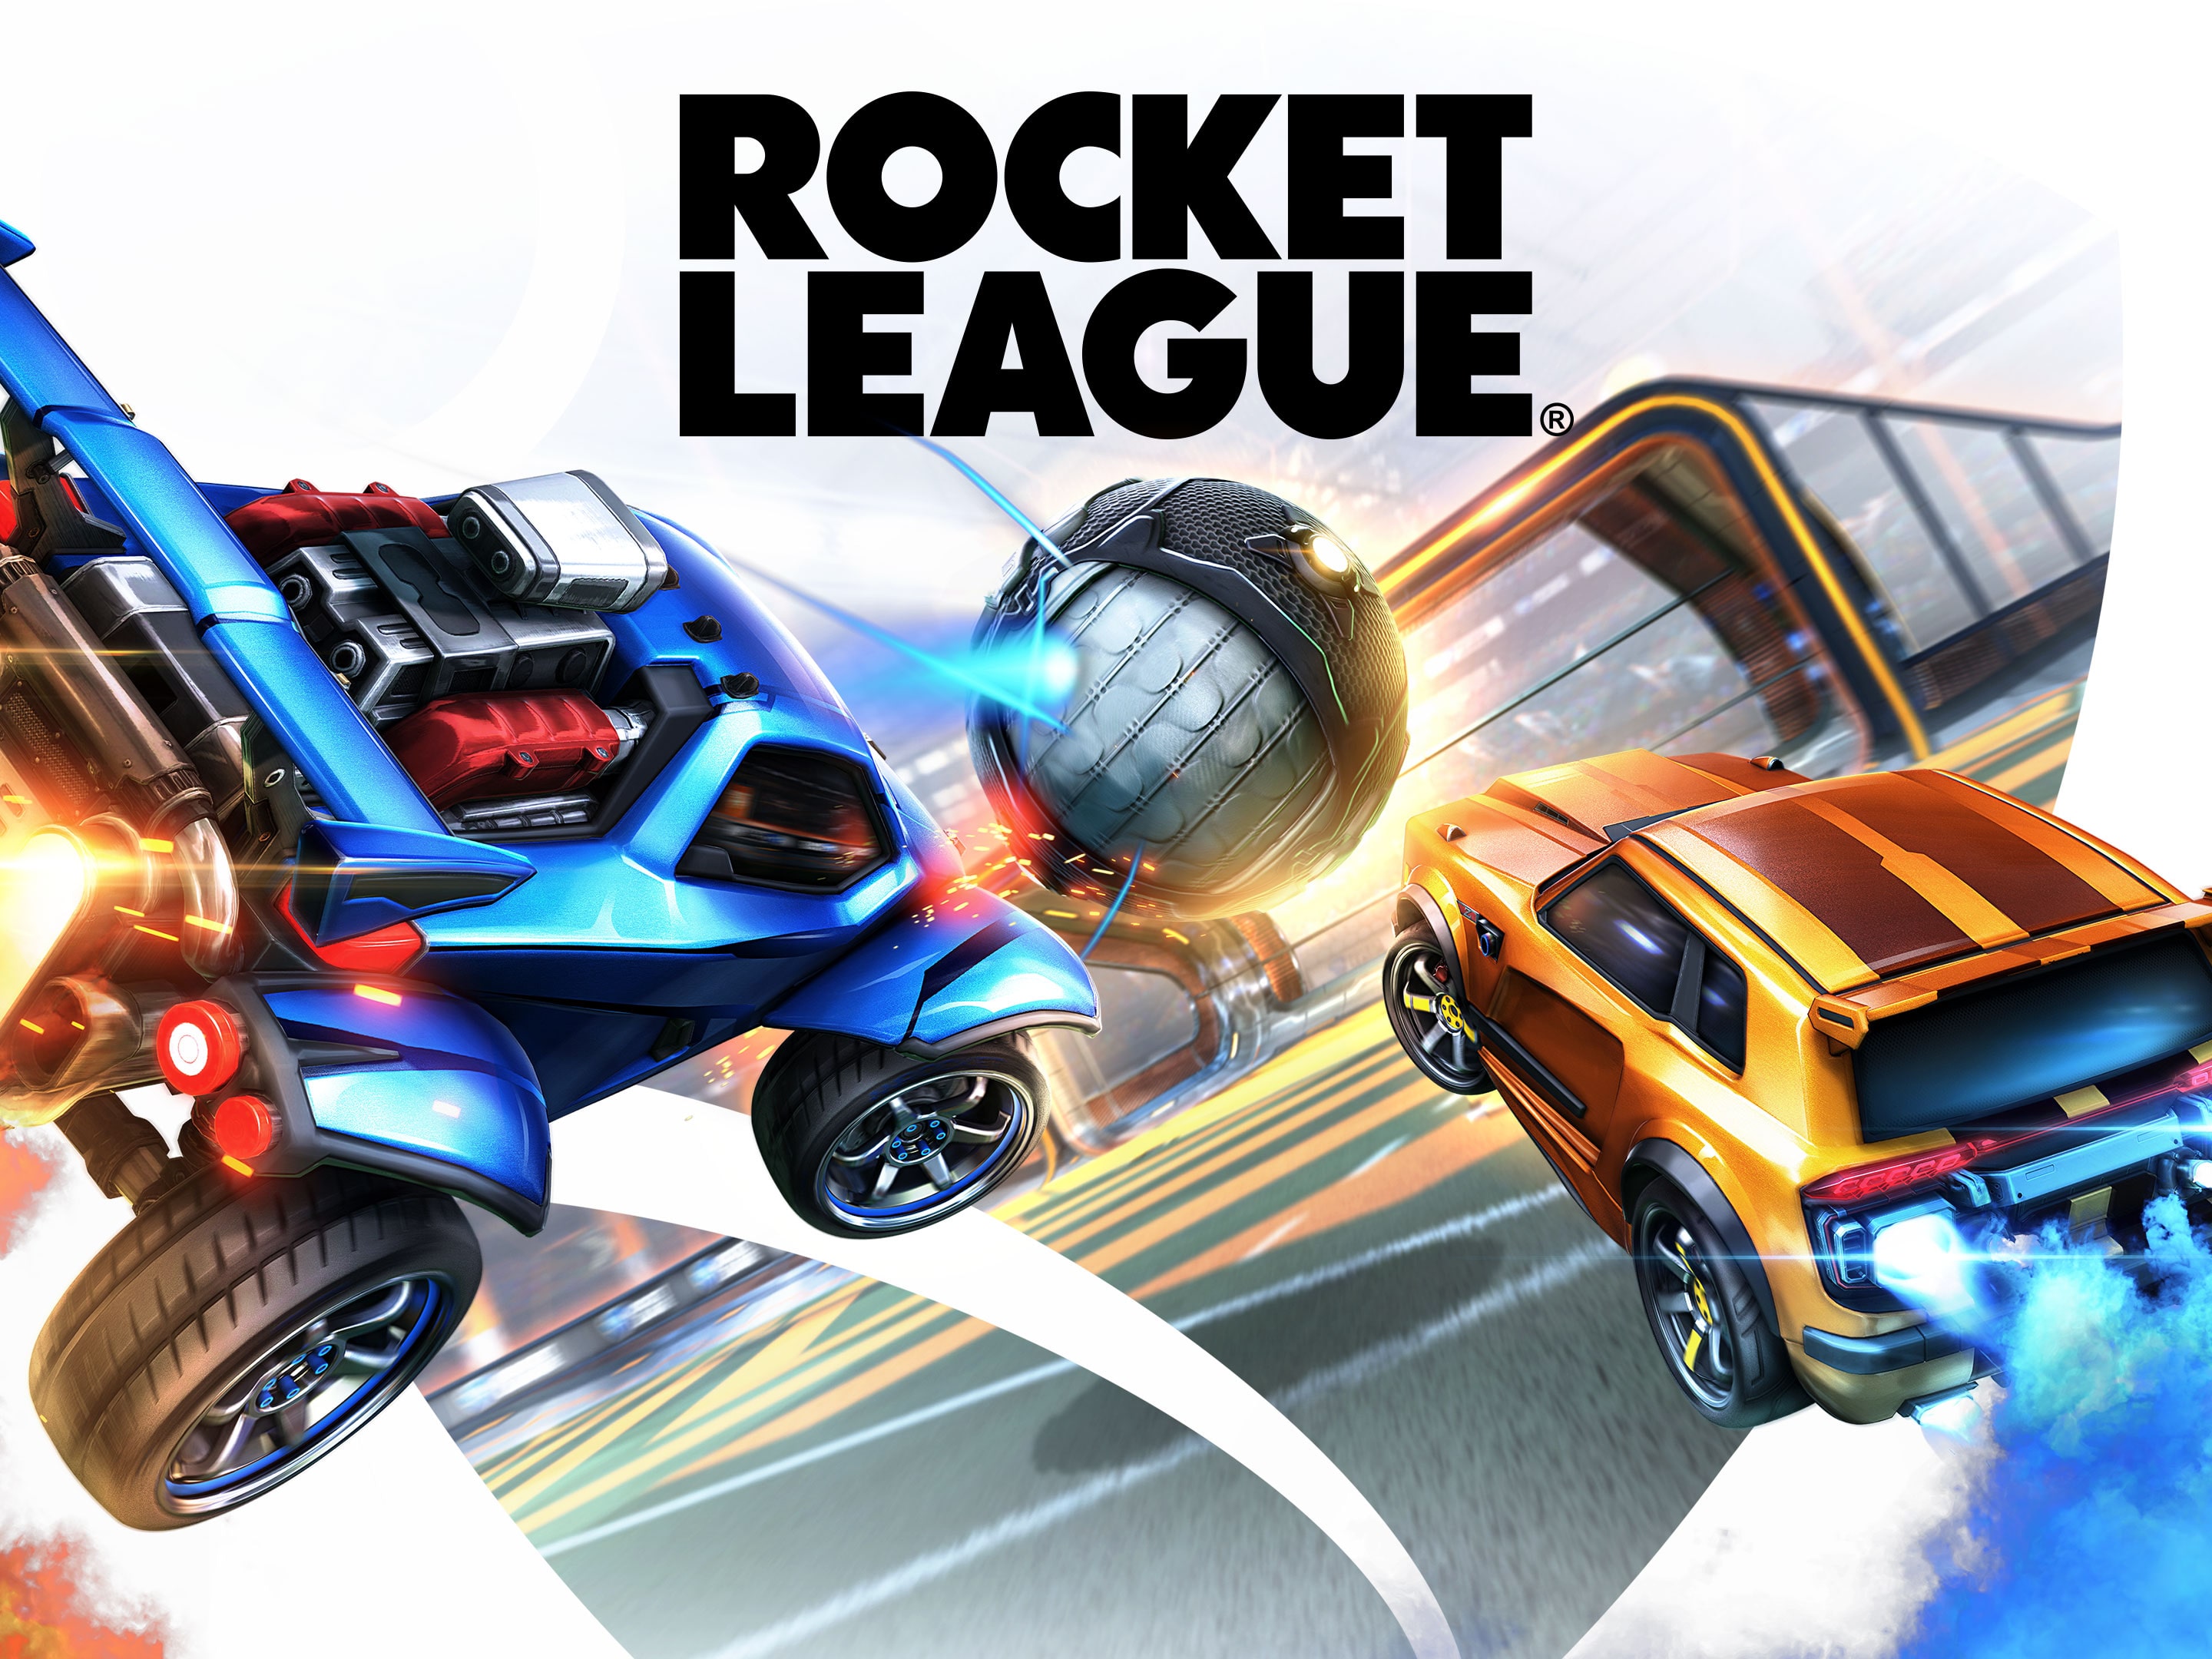 Las mejores ofertas en Sony PlayStation 4 juegos de video Rocket League